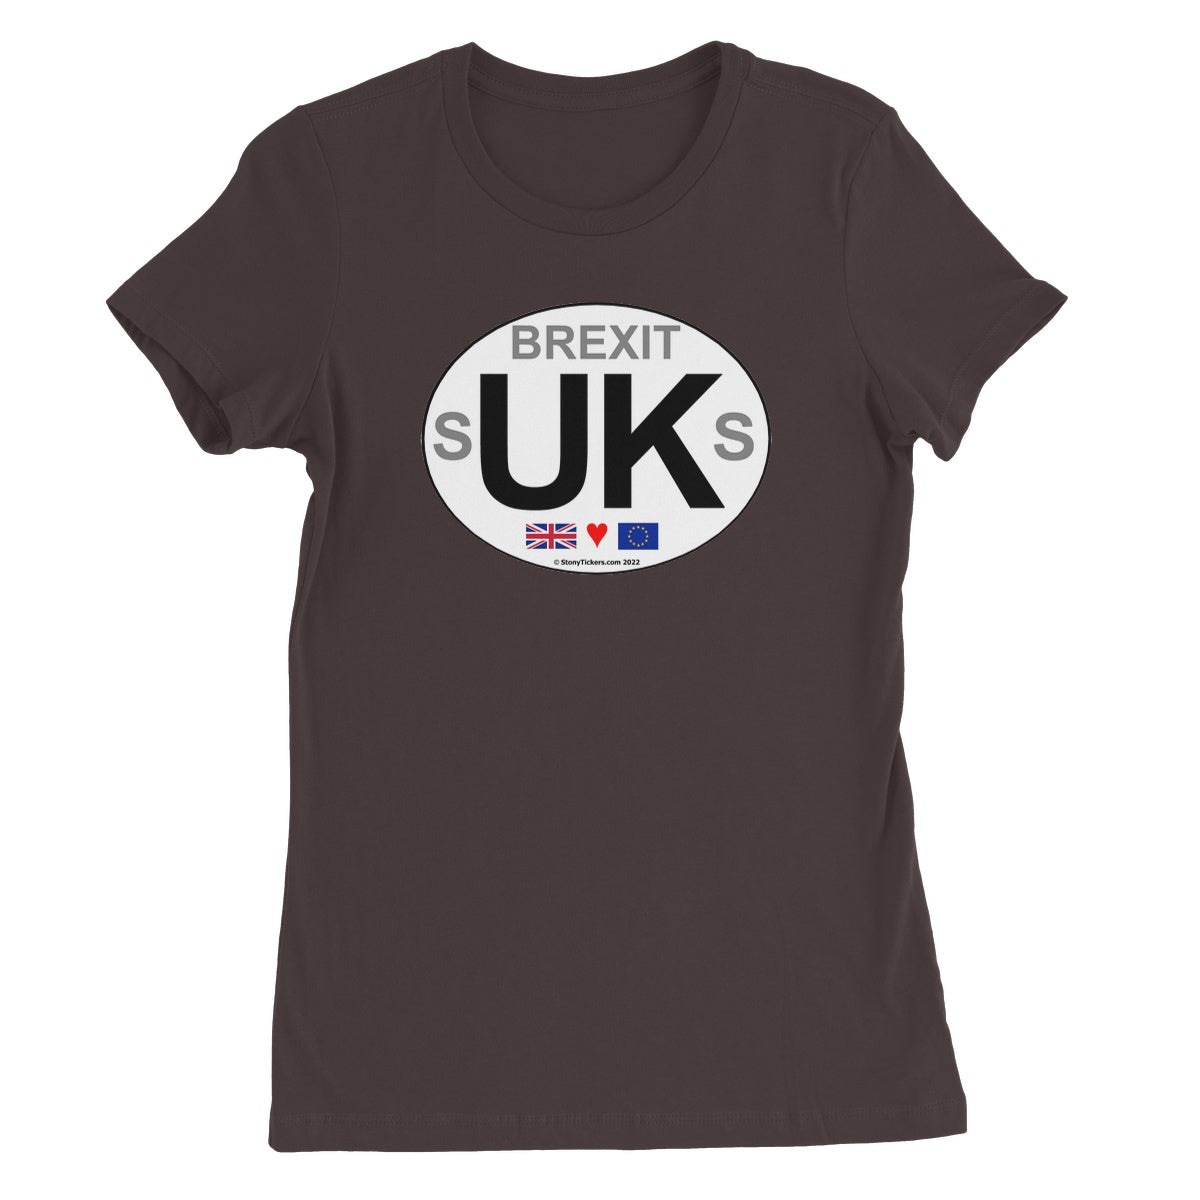 Brexit sUKs Women's T-Shirt